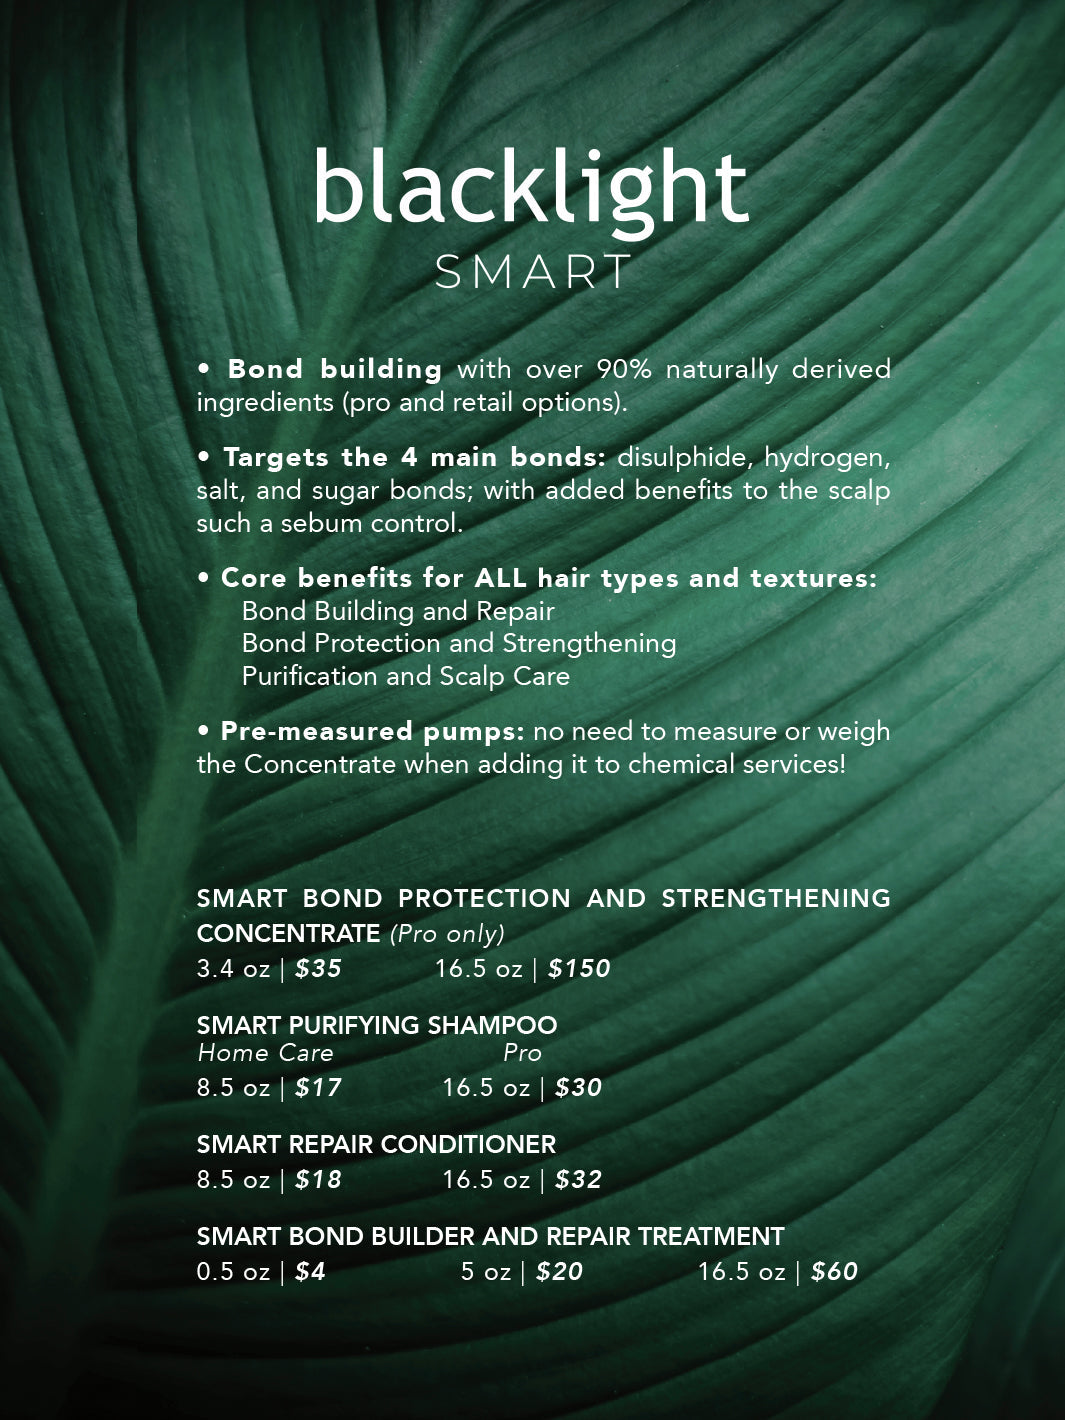 Blacklight Smart Repair Conditioner